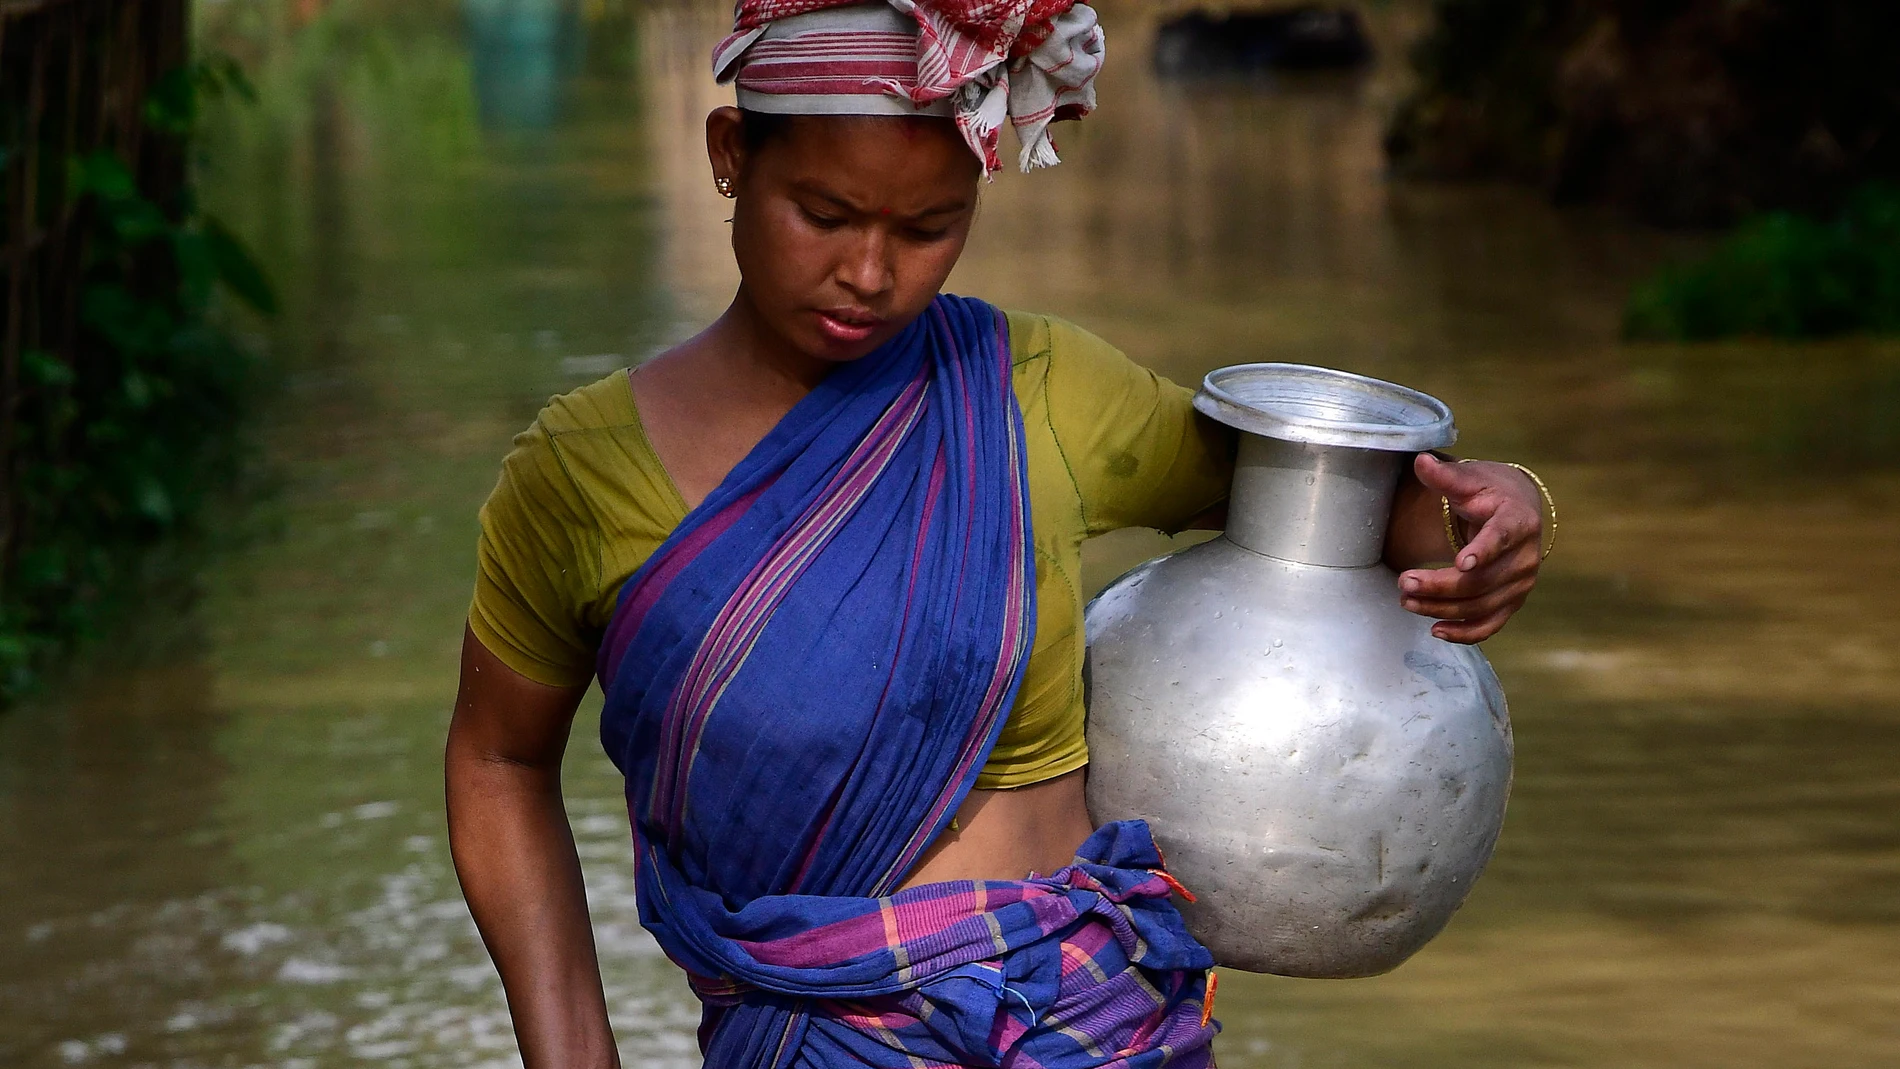 Un informe global de 2019 había incluido a India entre los 17 países donde el “estrés hídrico” era “extremadamente alto”.